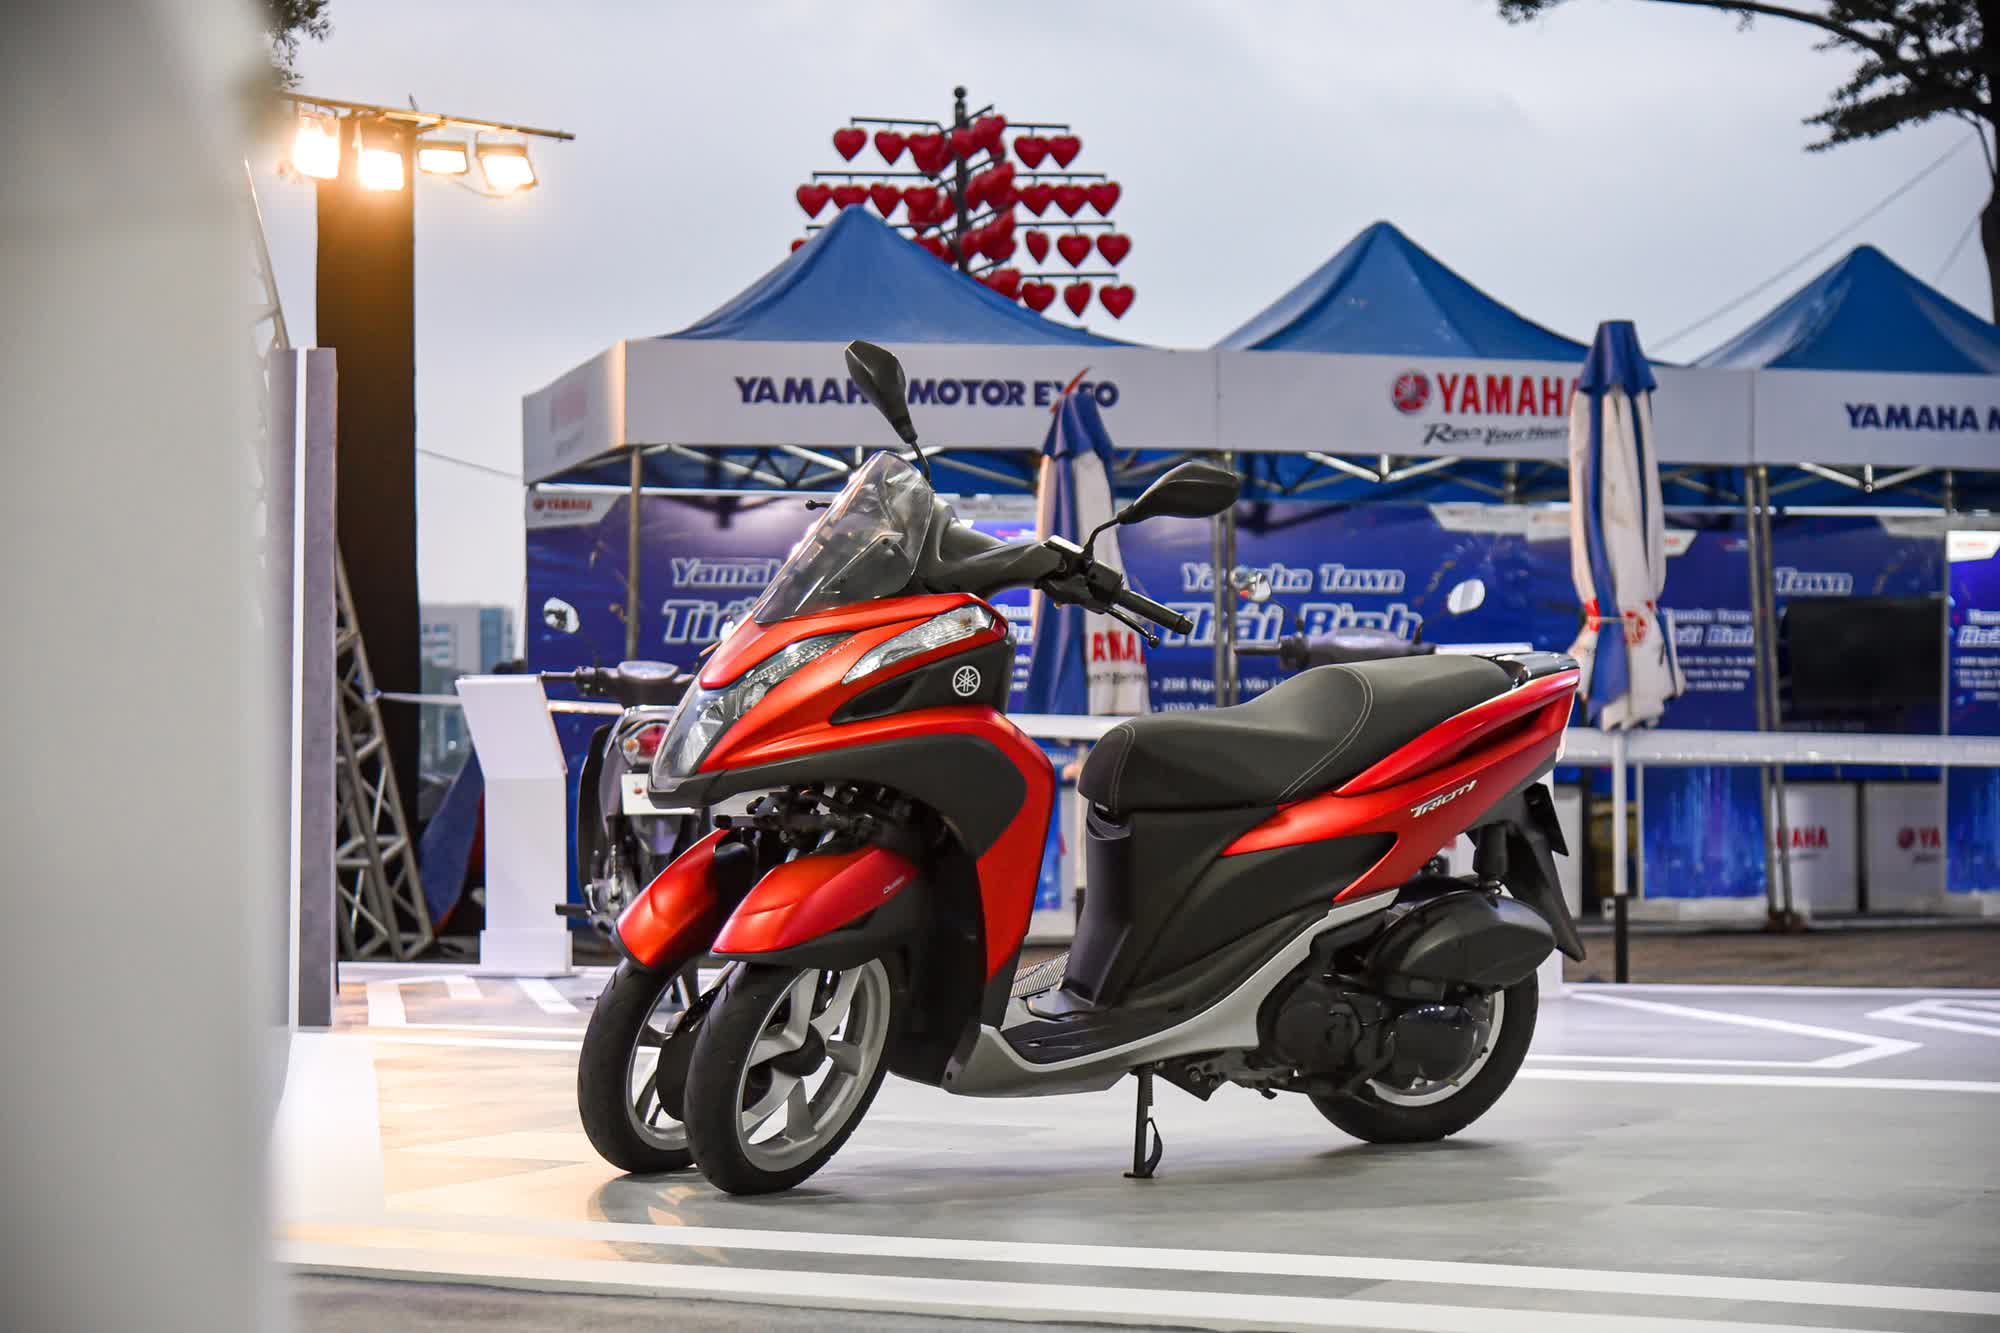 Chi tiết bộ đôi xe máy Yamaha 3 bánh cực dị tại Việt Nam - Ảnh 10.